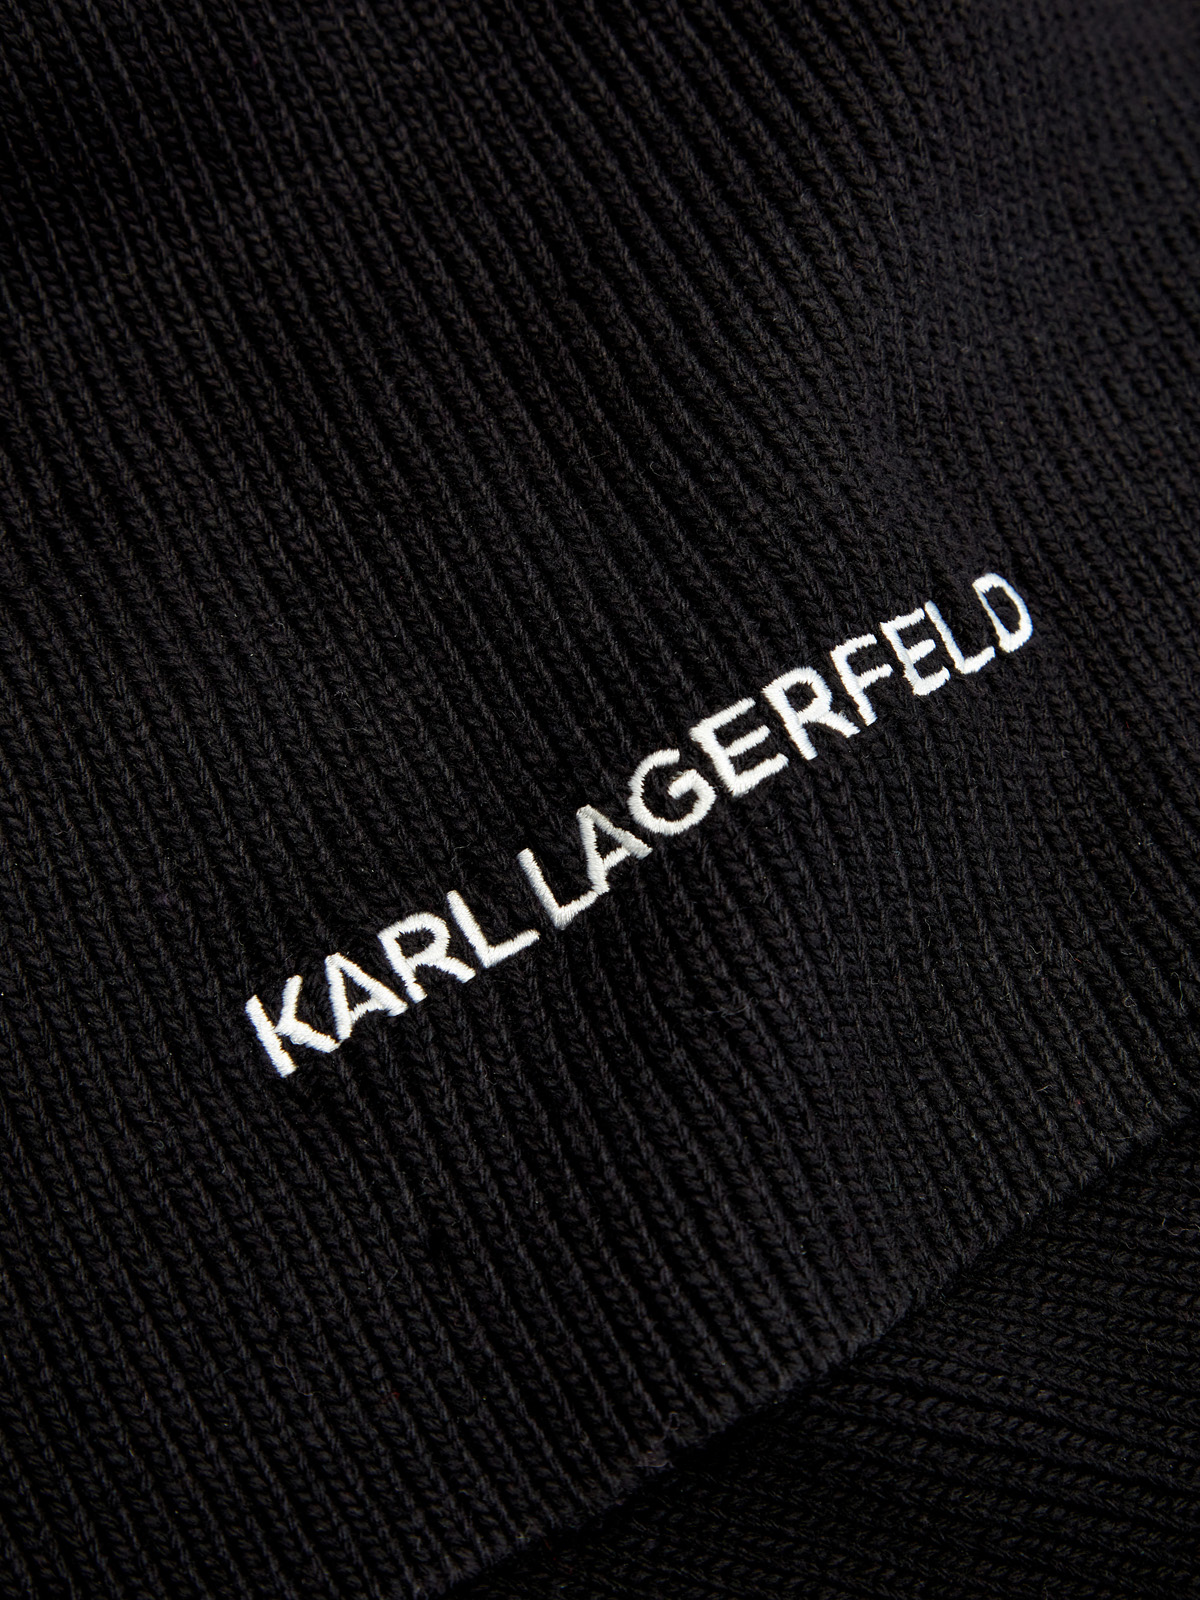 Шарф K/Essential из пряжи плотной вязки с контрастной вышивкой KARL LAGERFELD, цвет черный, размер 37;38;39;40;41;42 Шарф K/Essential из пряжи плотной вязки с контрастной вышивкой - фото 2